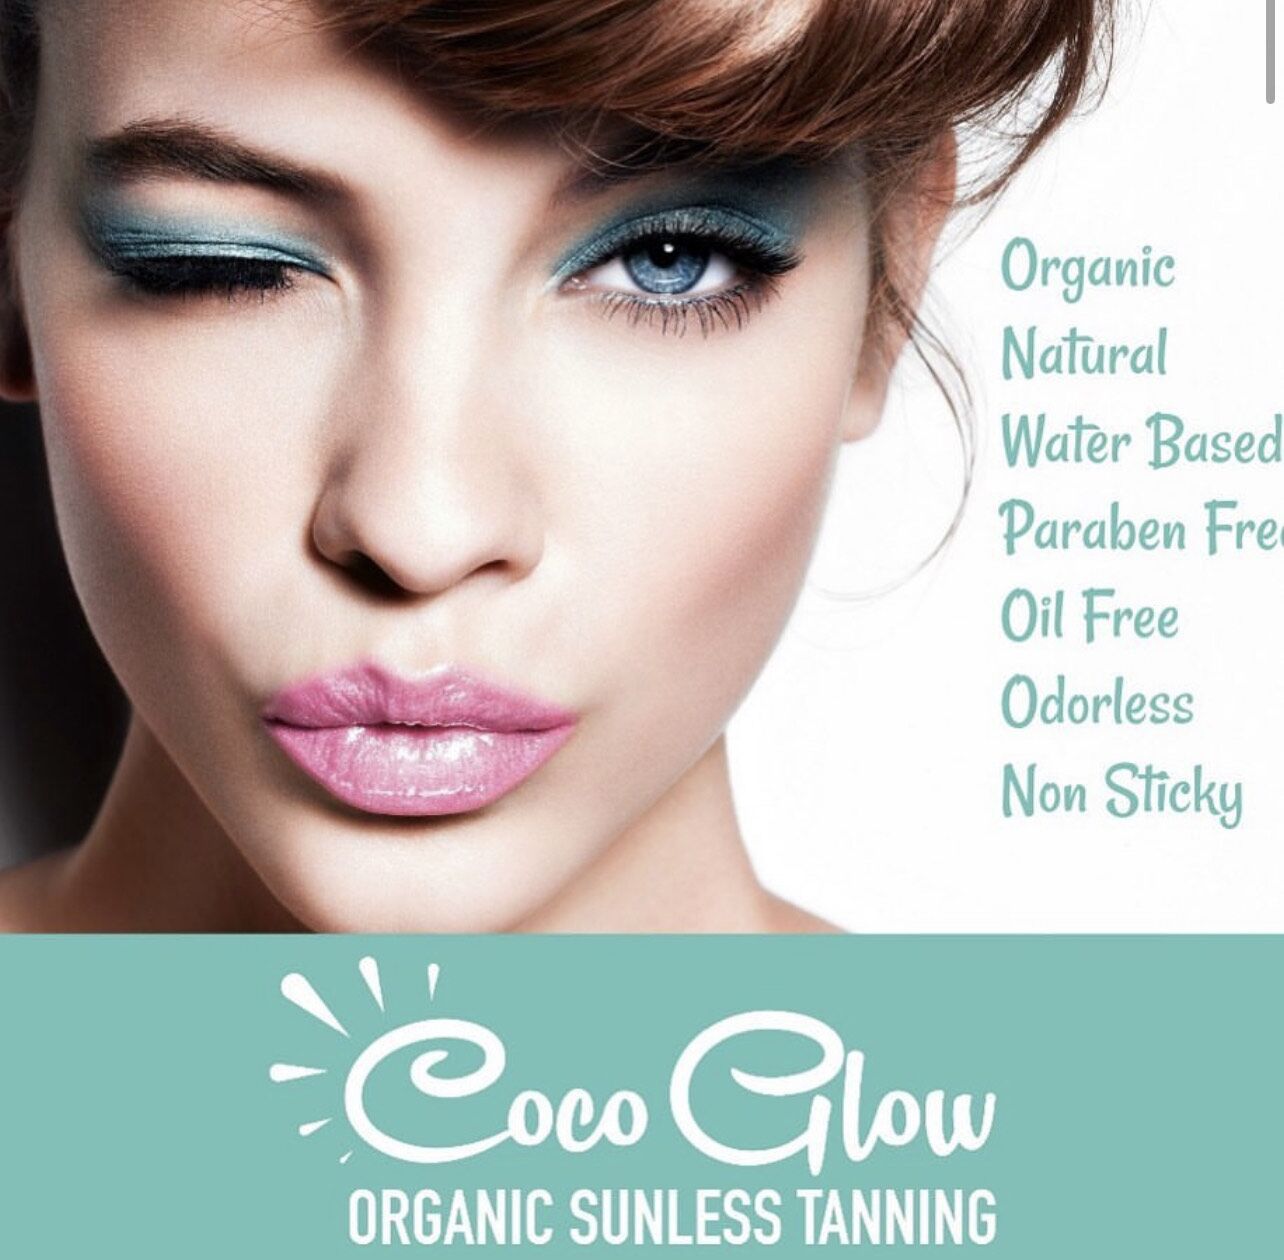 Glow - Organic Sunless Tanning